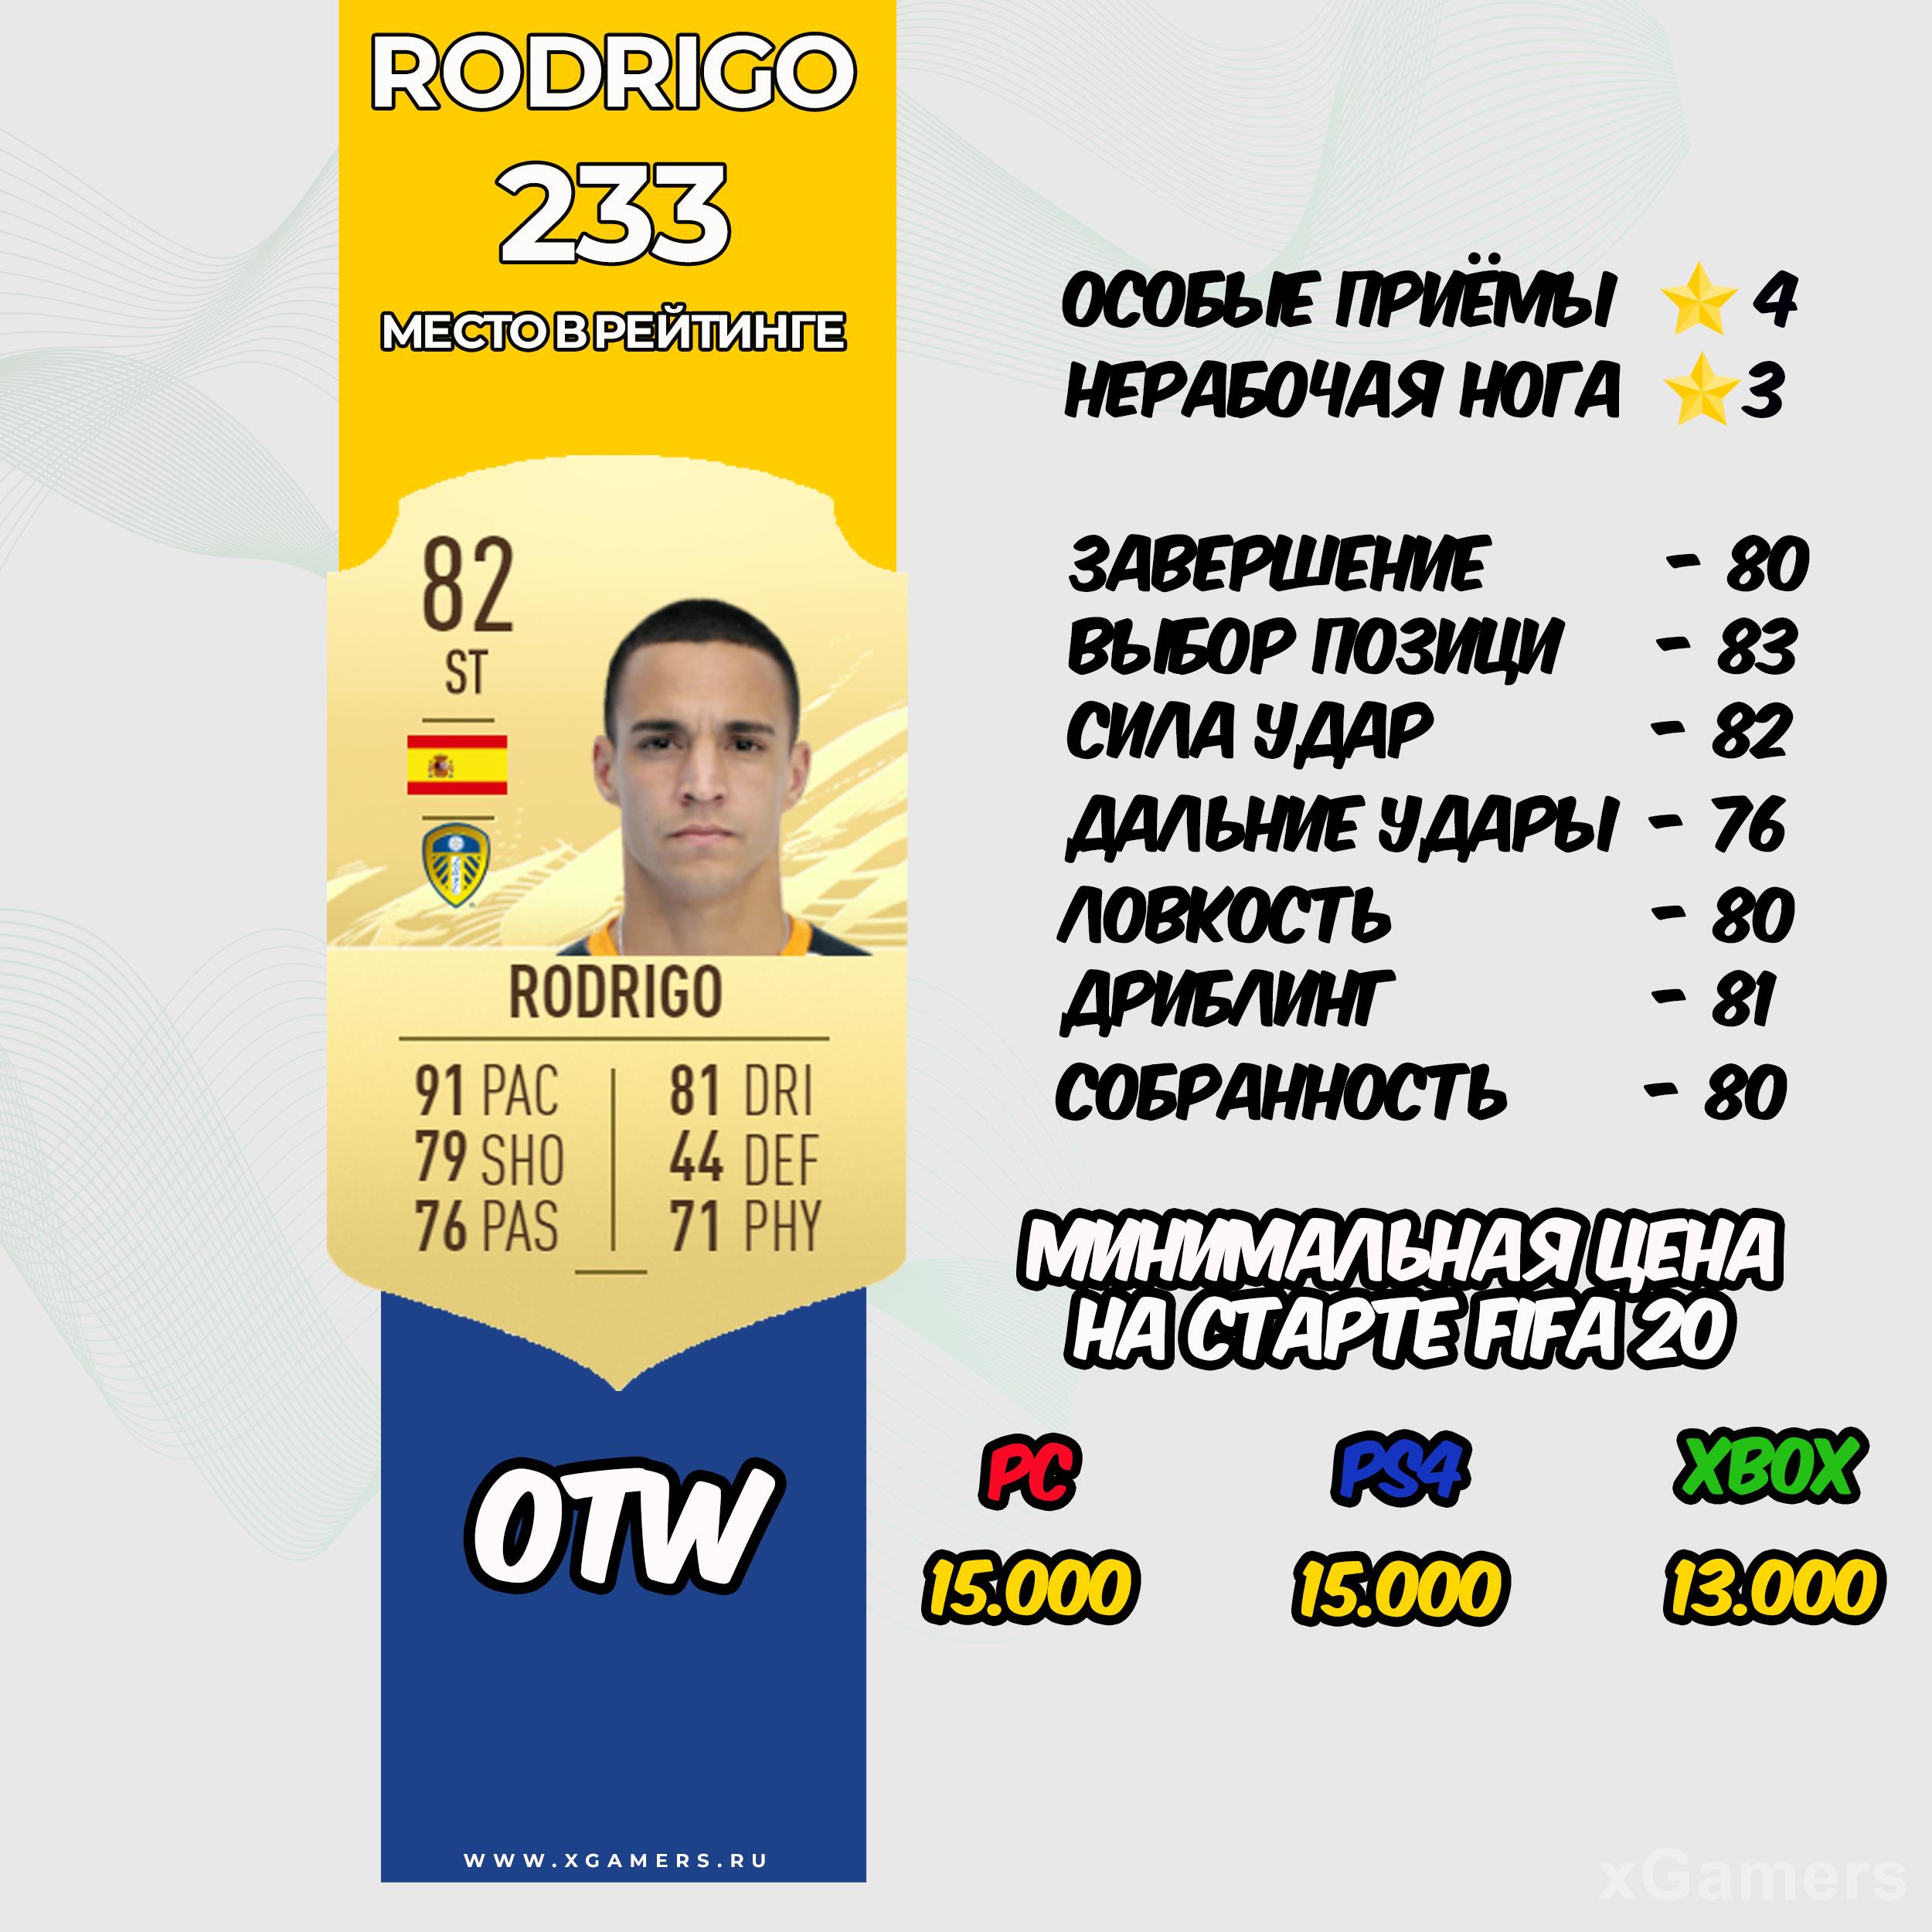 Rodrigo - место в рейтинге 233